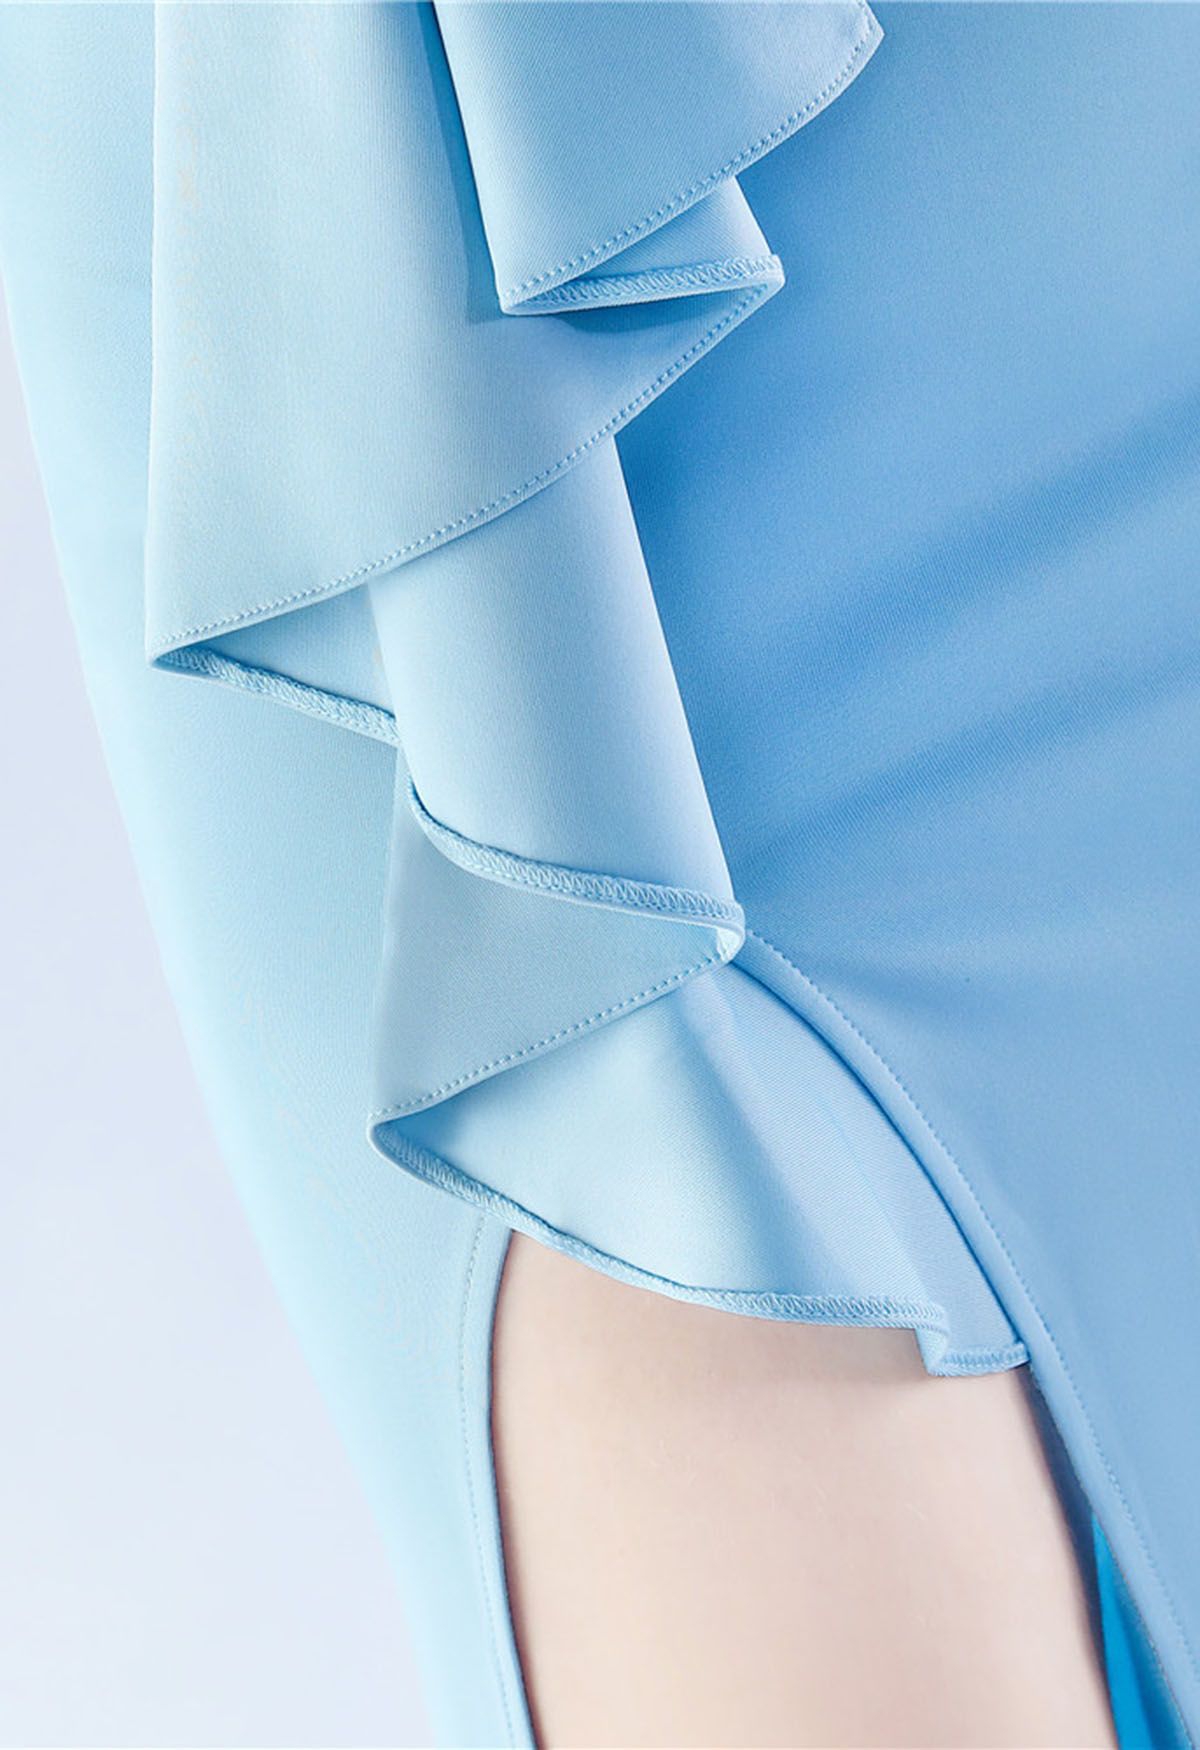 Off-Shoulder Front Slit Satin Gown in Baby Blue